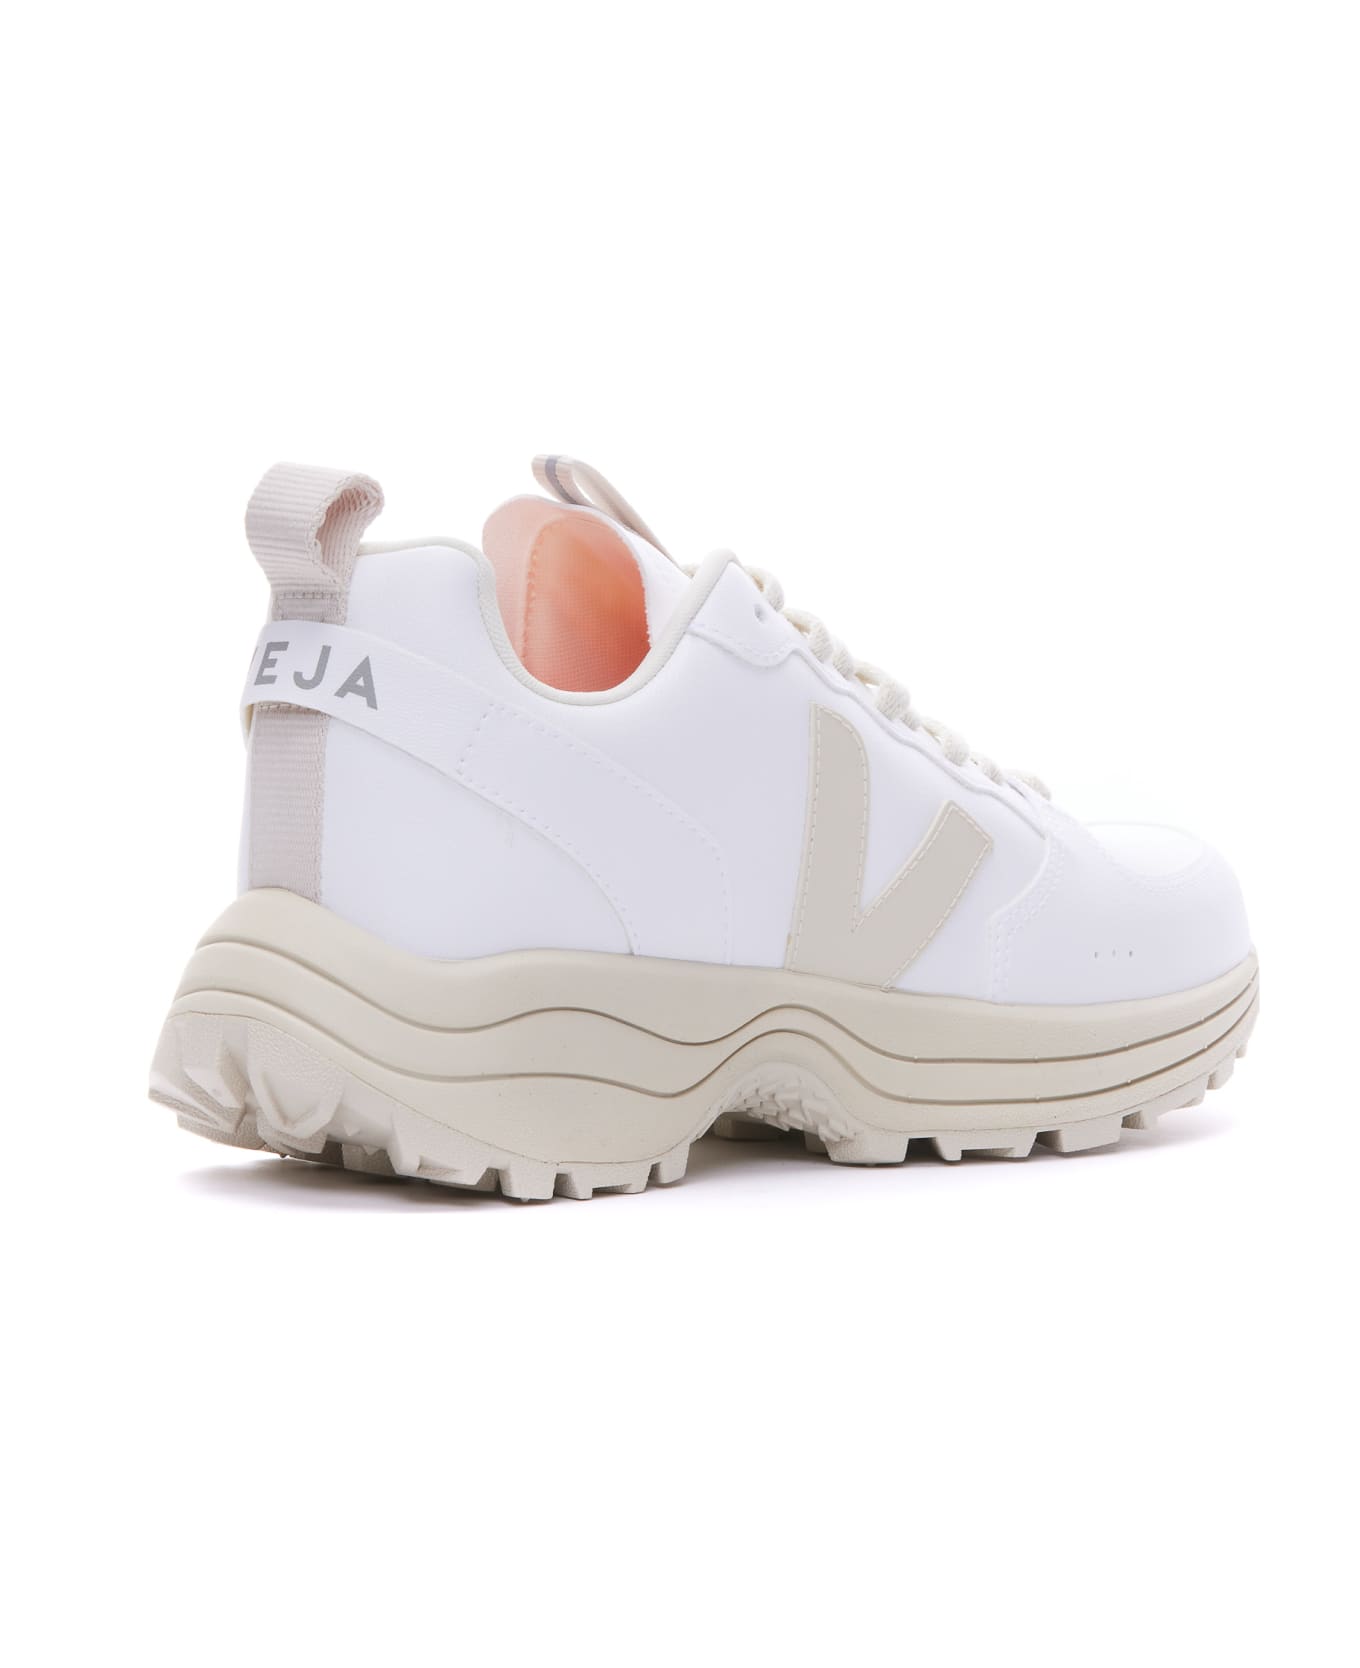 Veja Venturi Cwl Sneakers - Bianco